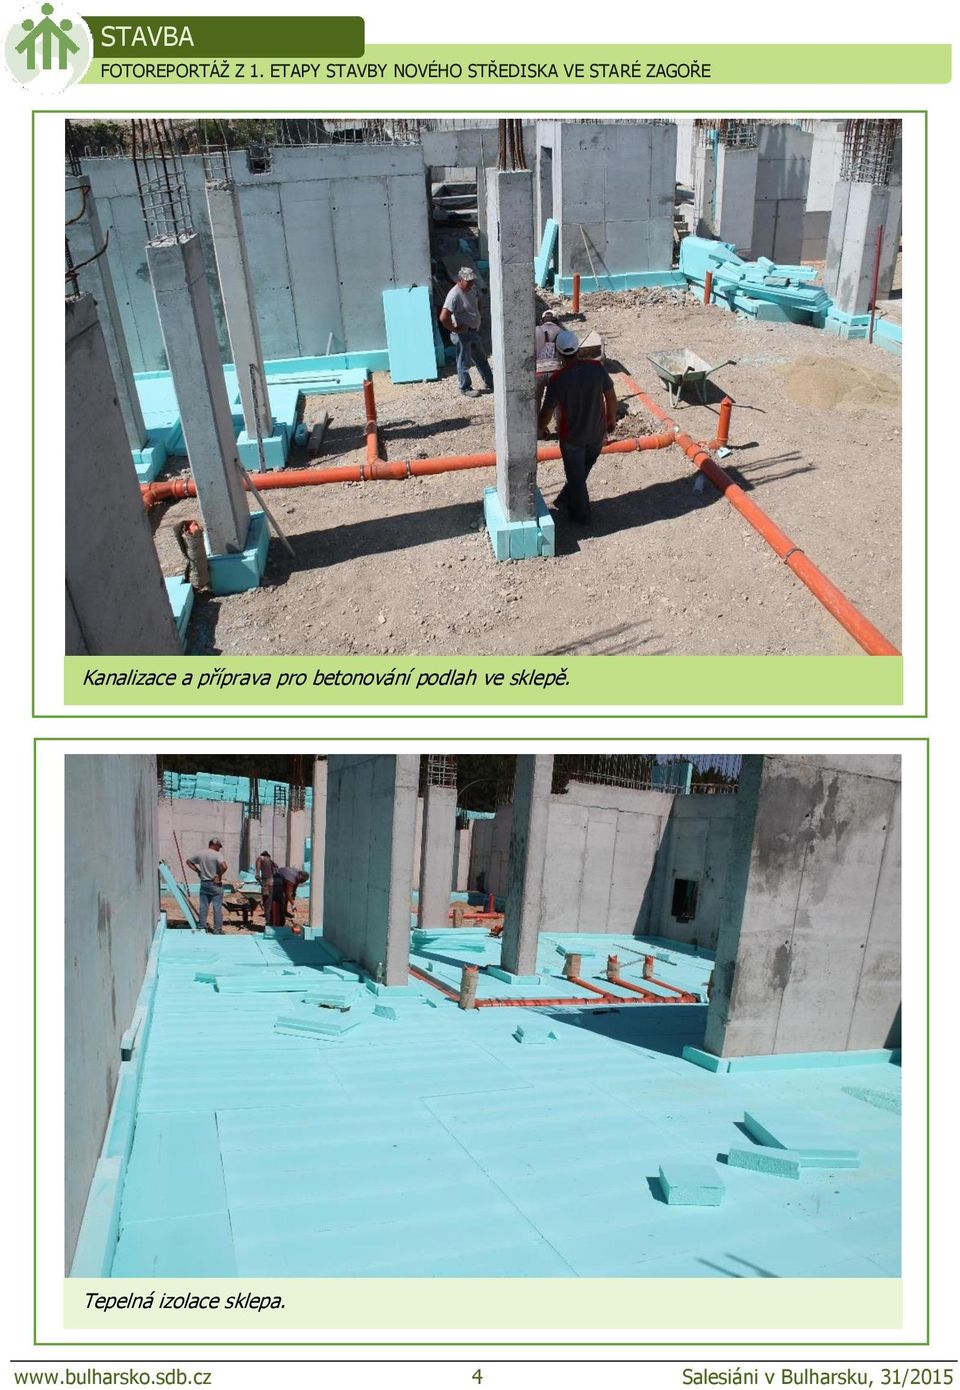 Kanalizace a příprava pro betonování podlah ve